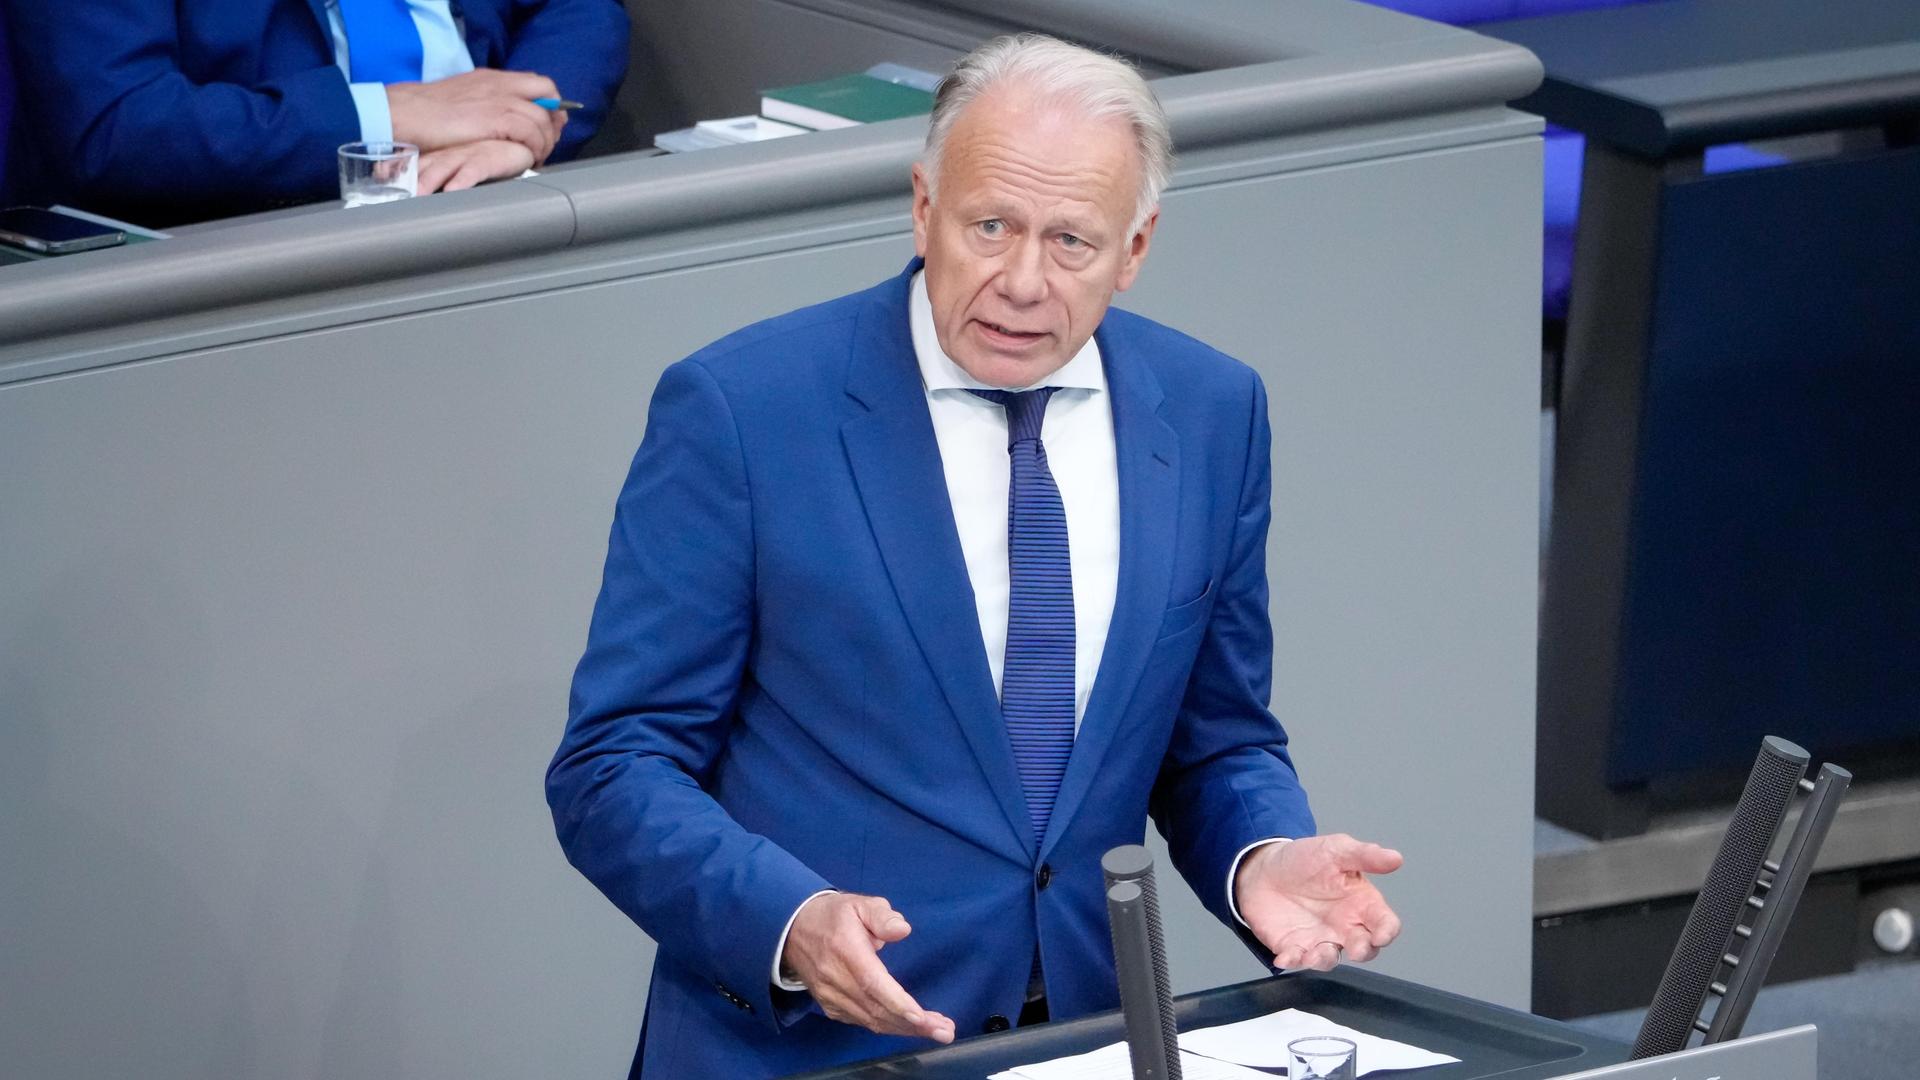 Jürgen Trittin im blauen Anzug bei seiner Rede zum 75. Jahrestag Gründung des Staates Israel im Bundestag.